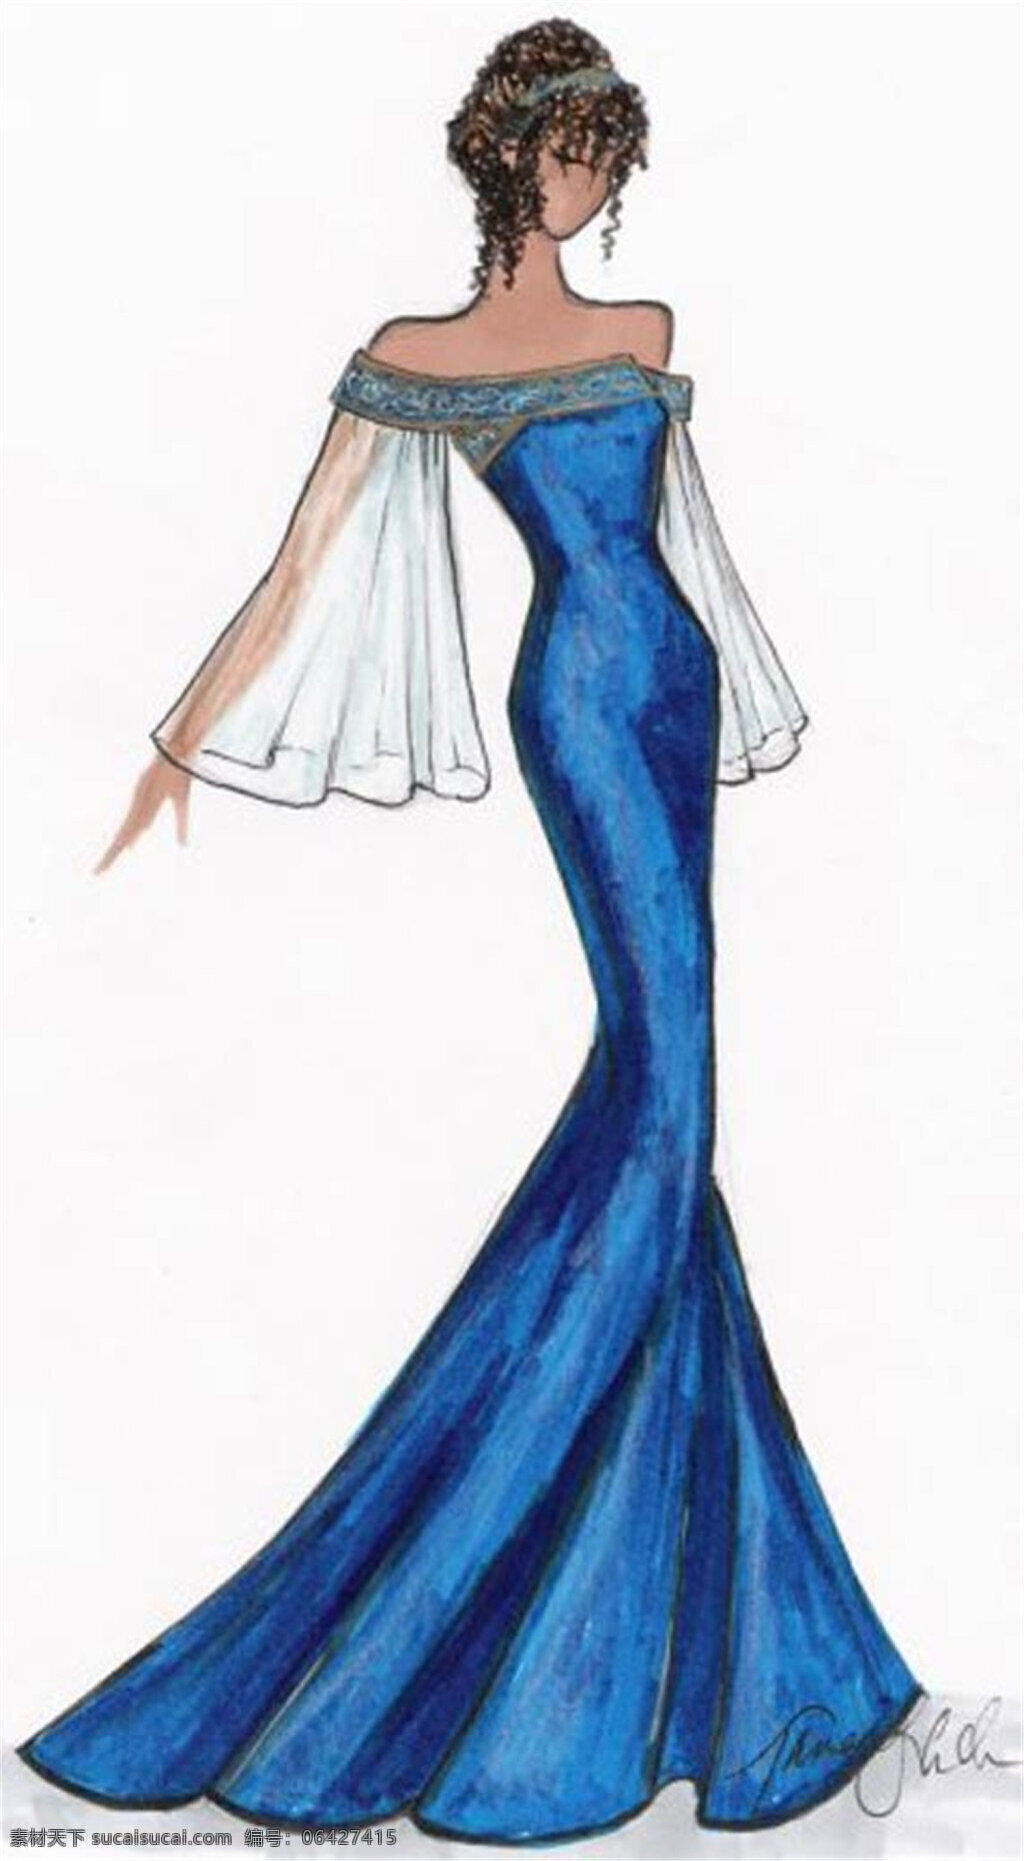 蓝色 长裙 礼服 设计图 服装设计 时尚女装 职业女装 职业装 女装设计 效果图 短裙 衬衫 服装 服装效果图 连衣裙